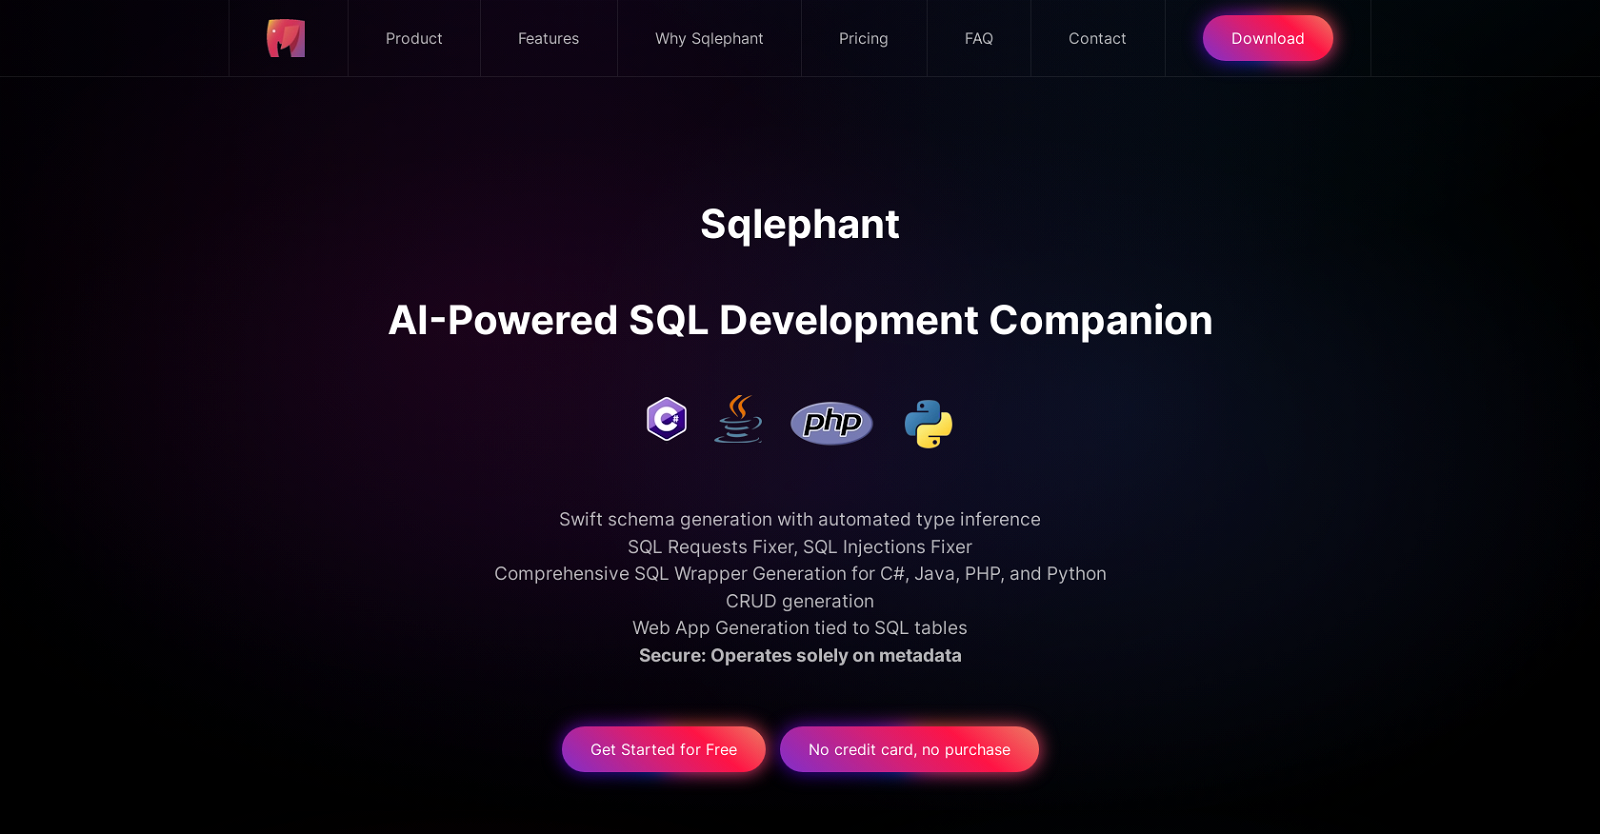 SQLephant website